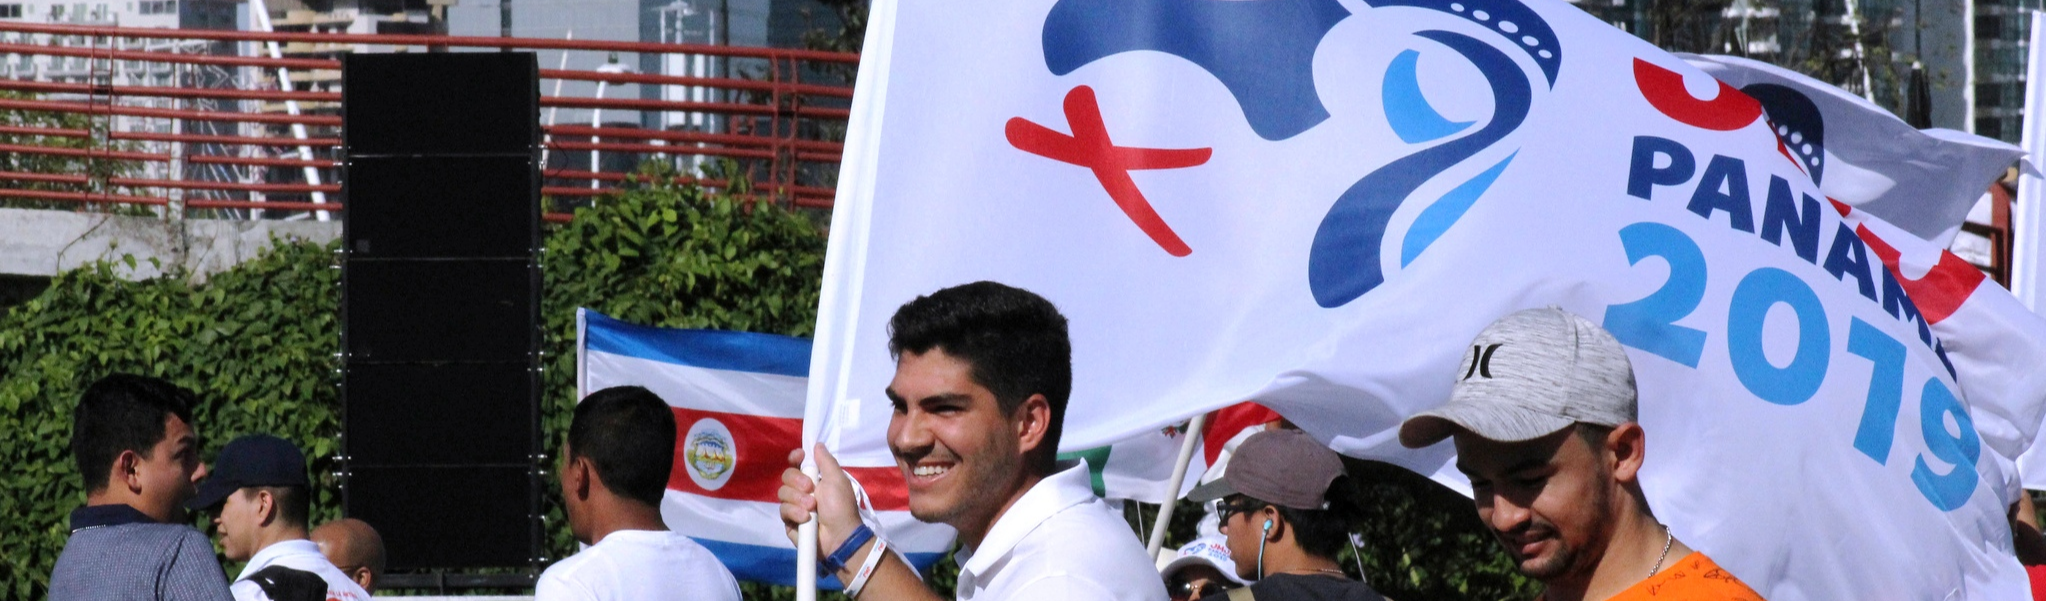 Jornada Mundial da Juventude: Panamá, esperando pelo Papa Francisco I